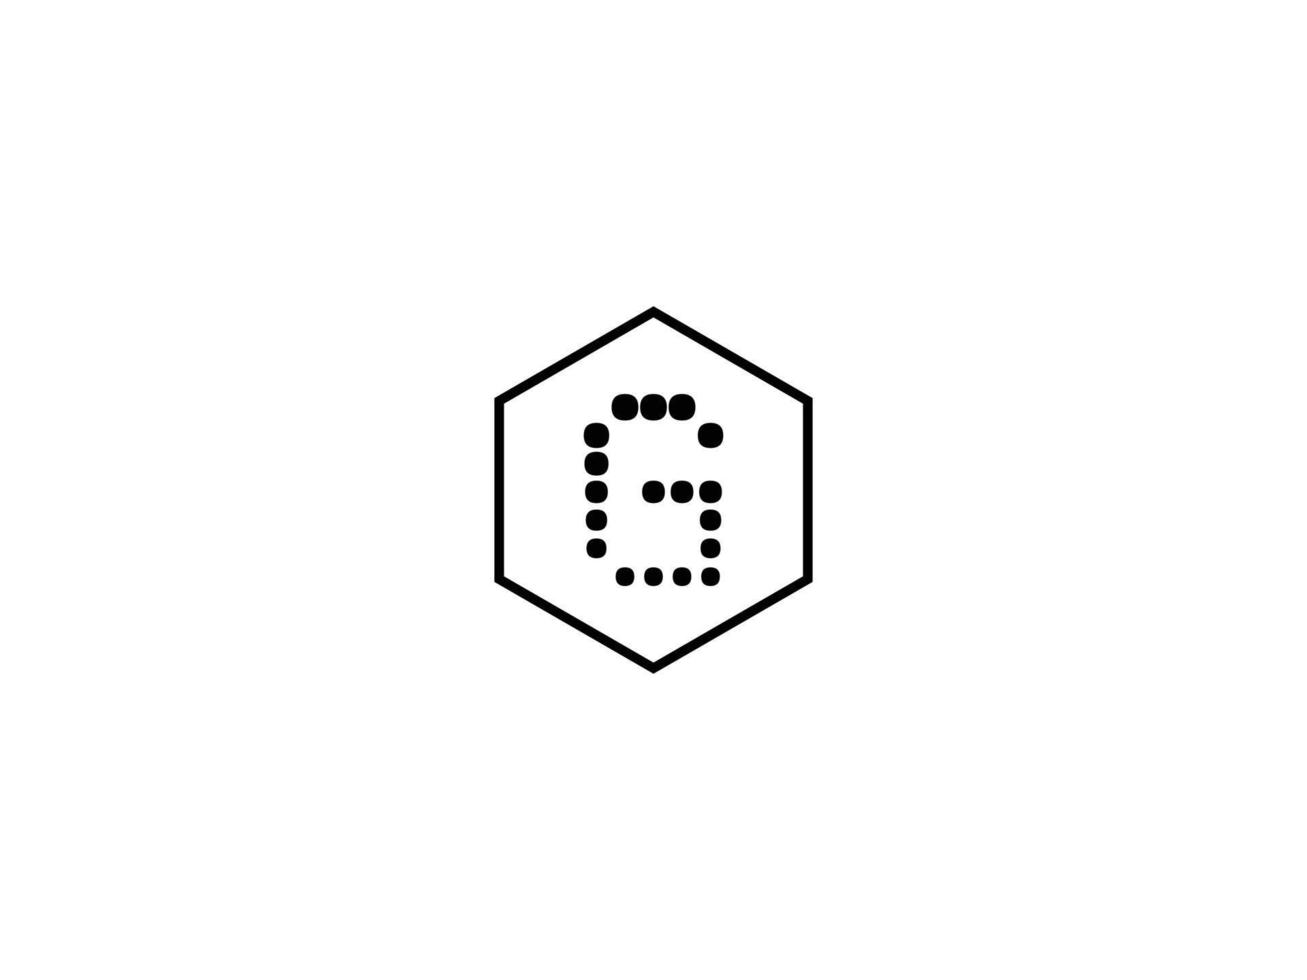 la toile g lettre logo vecteur gratuit Télécharger